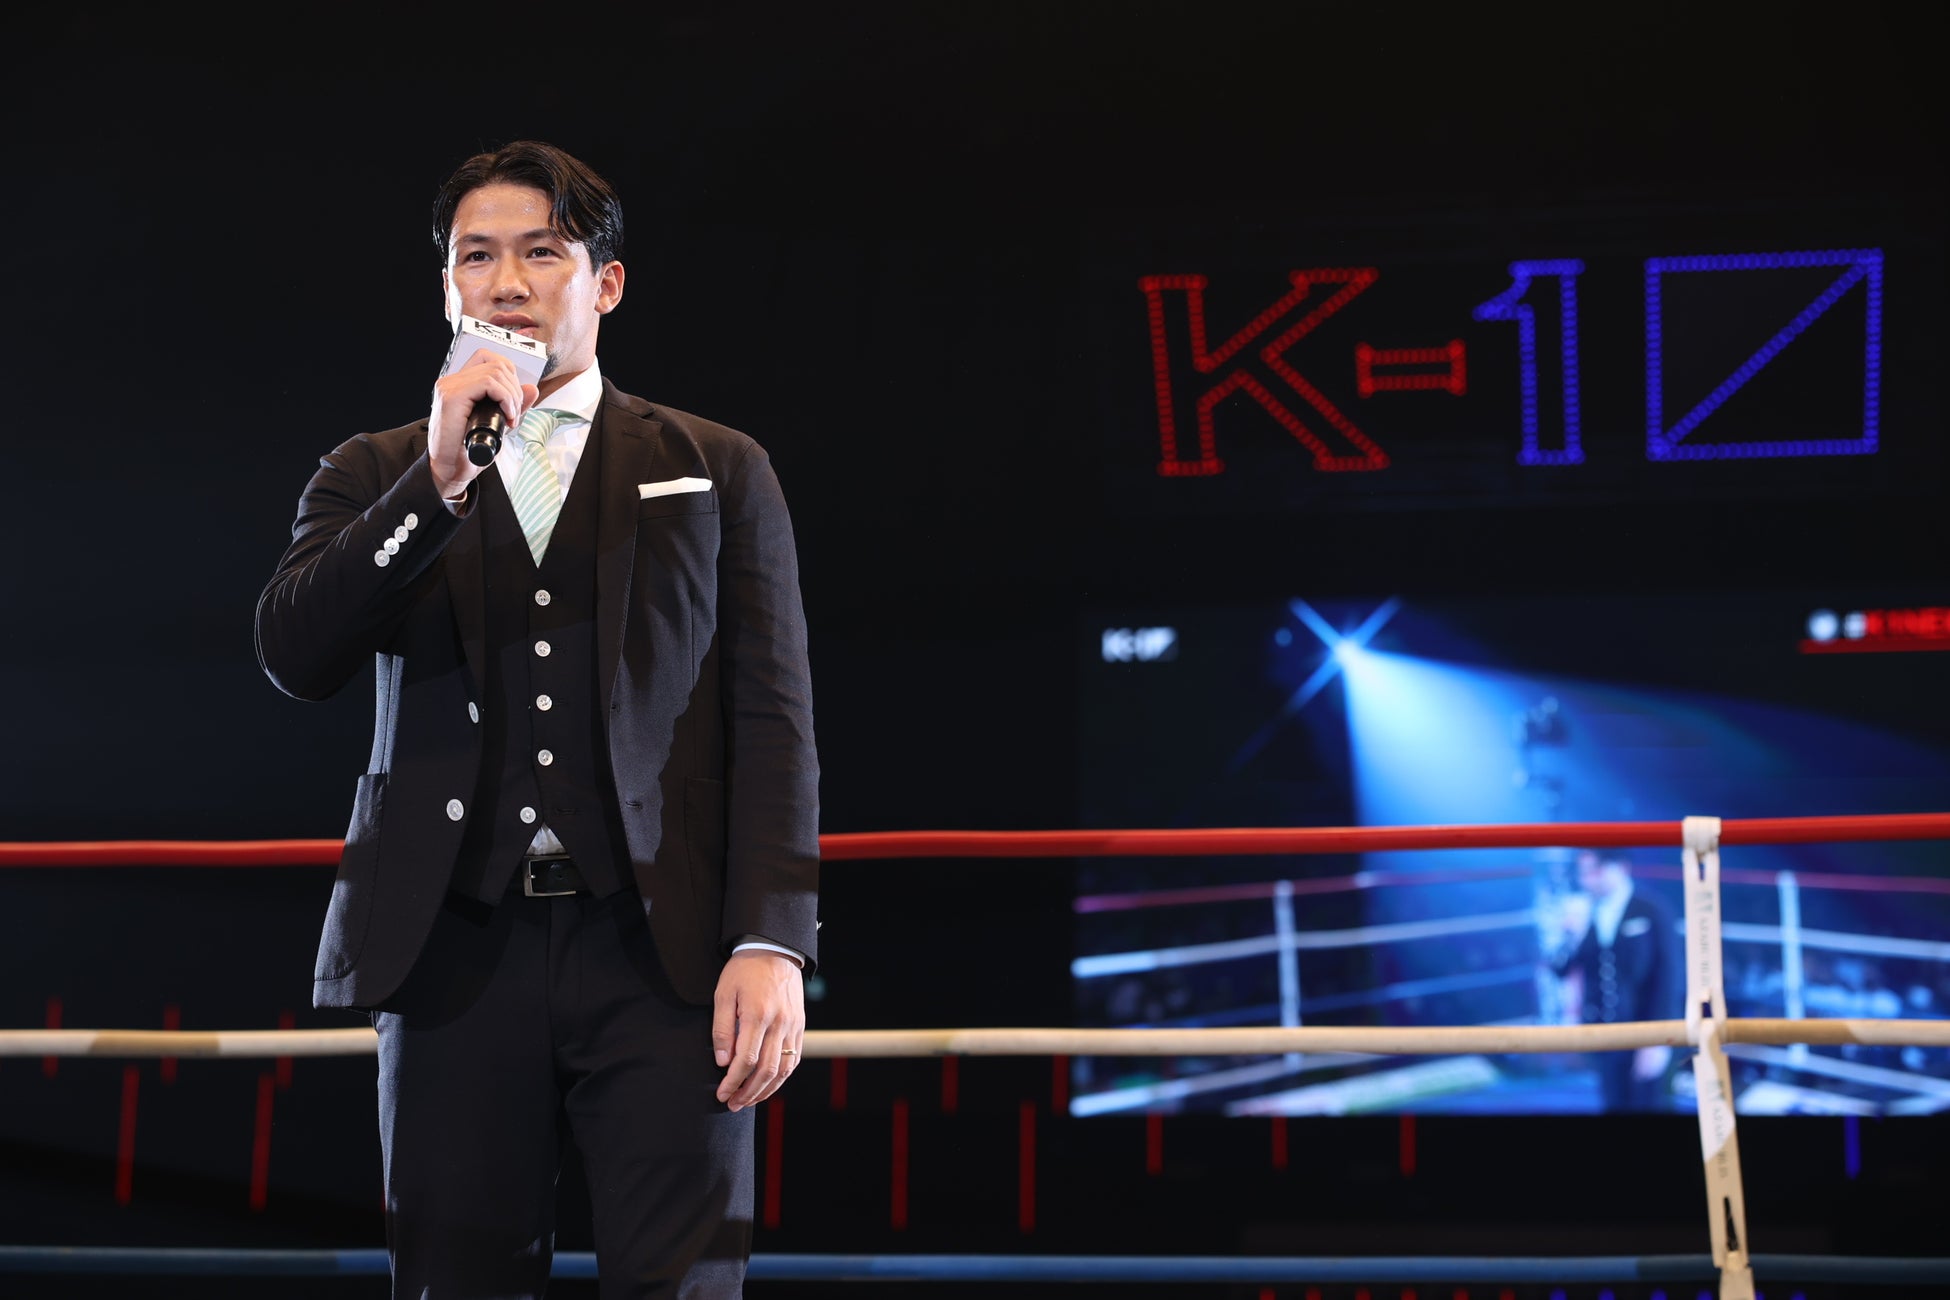 第2代K-1スーパー・フェザー級王者・卜部弘嵩が引退セレモニー「またいつか、格闘技に恩返しができたらいいなと思います」のサブ画像1